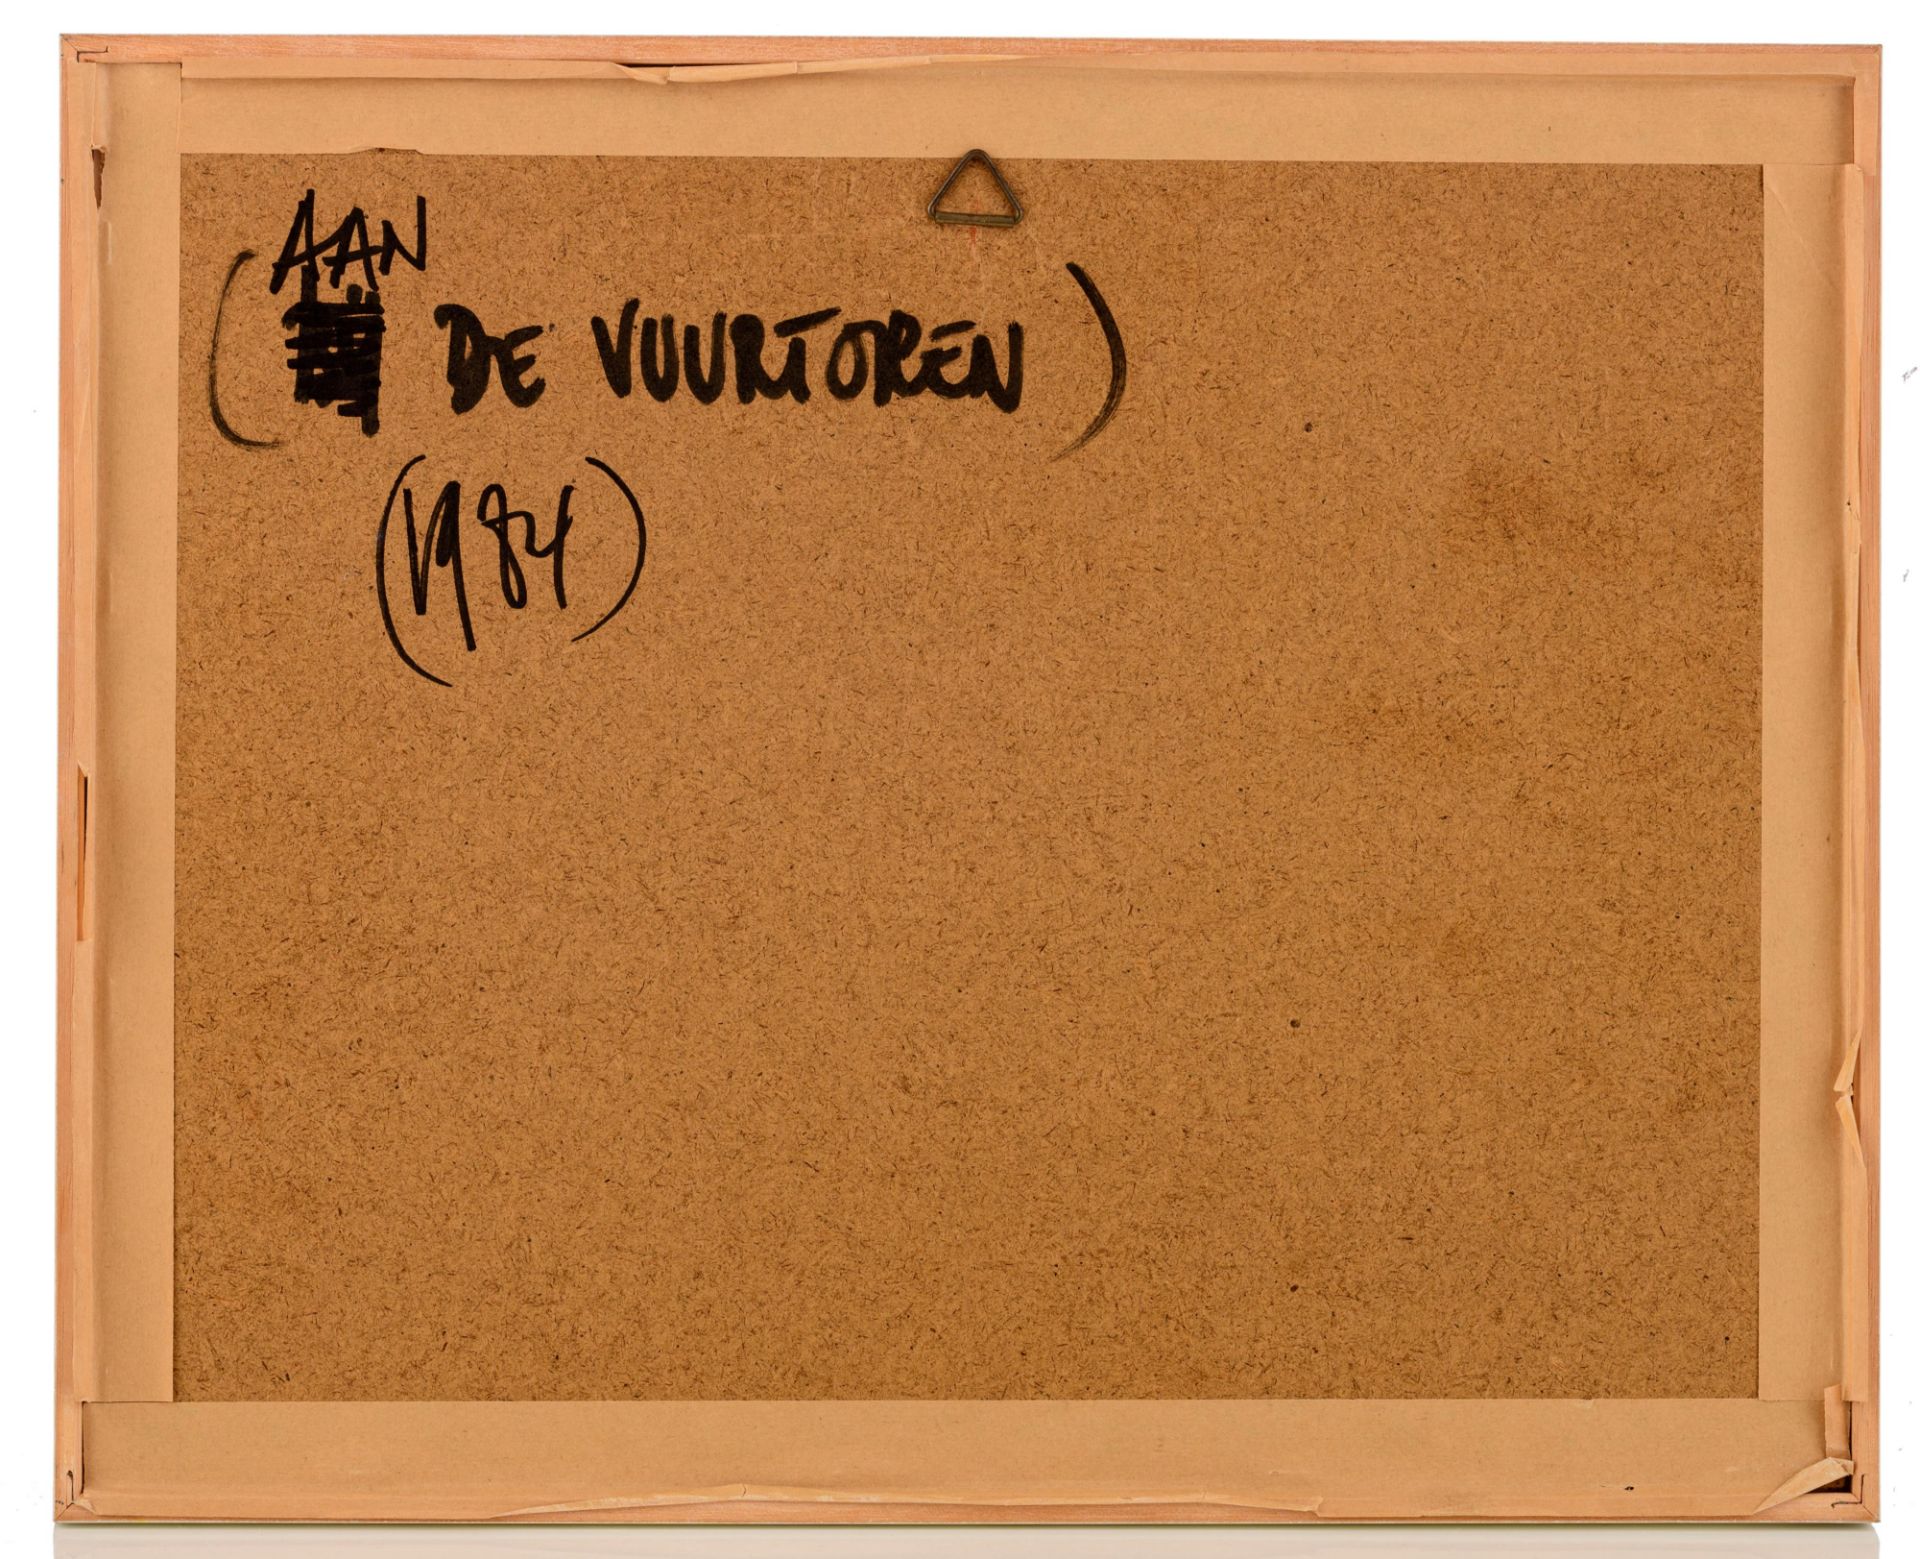 Marc Maet (1955-2000), 'Aan de vuurtoren', 1984, 19 x 25 cm - Image 3 of 5